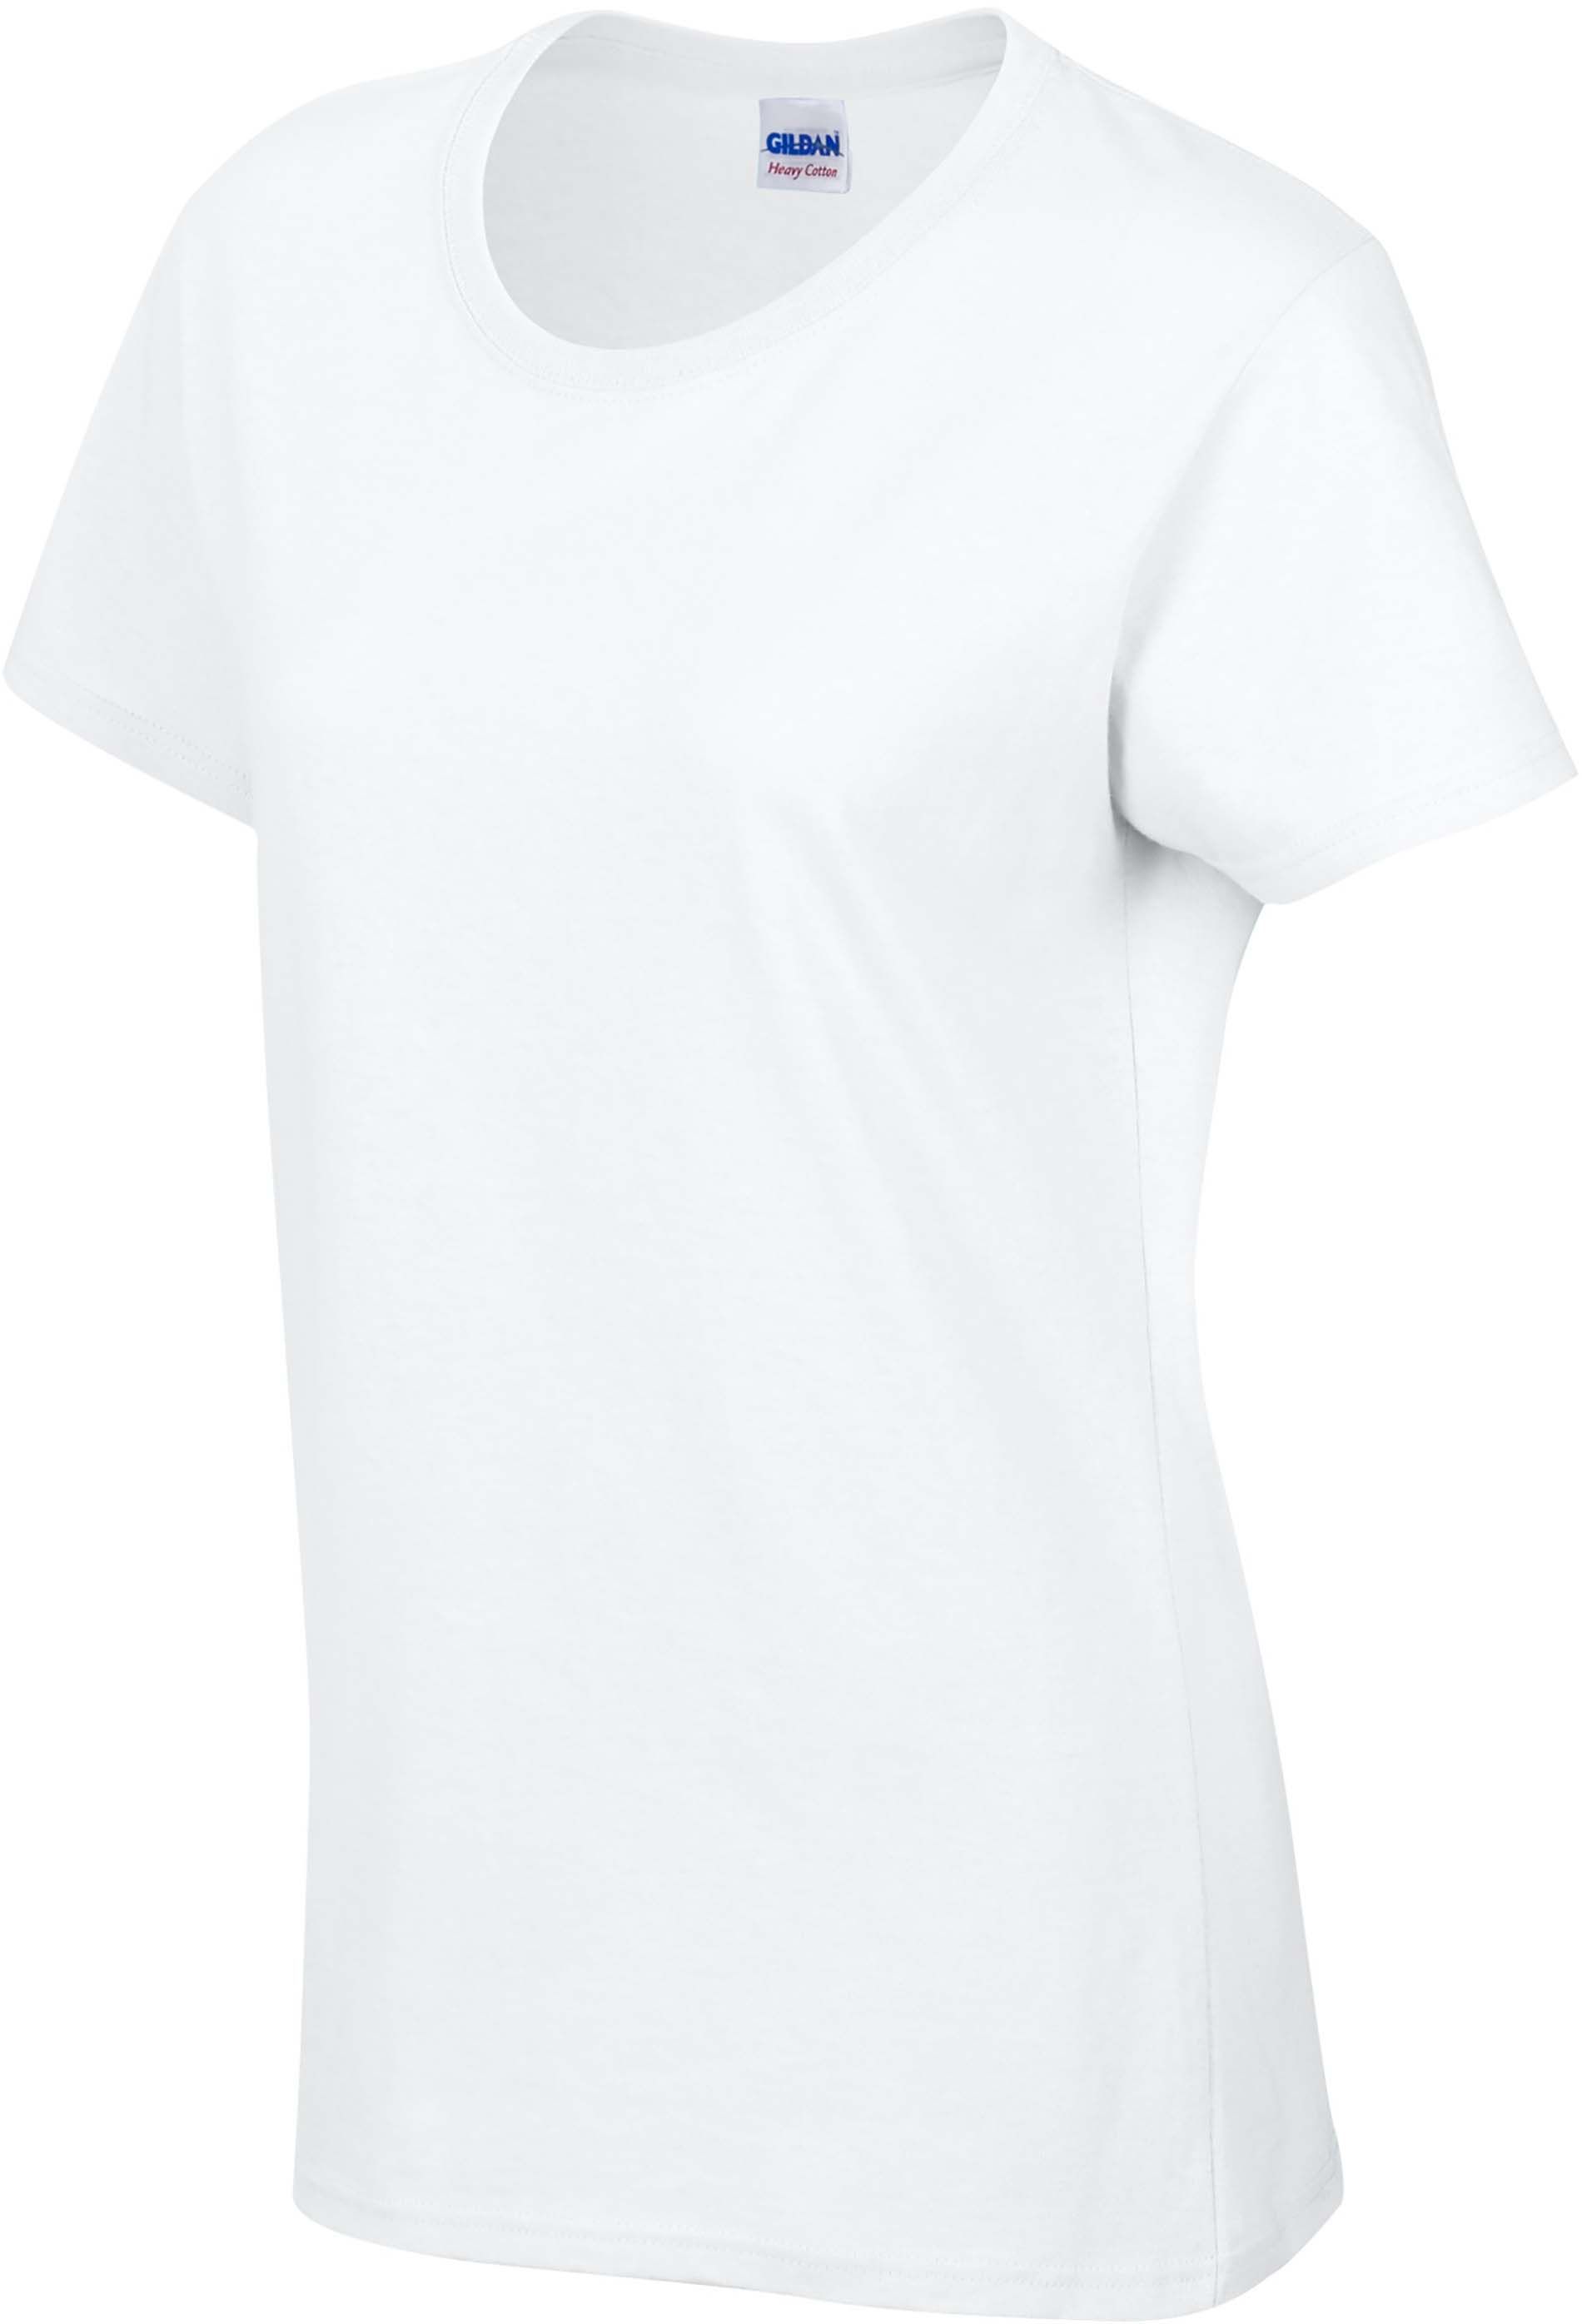 T-shirt femme blanc à commander avec ou sans personnalisation chez Textile Direct